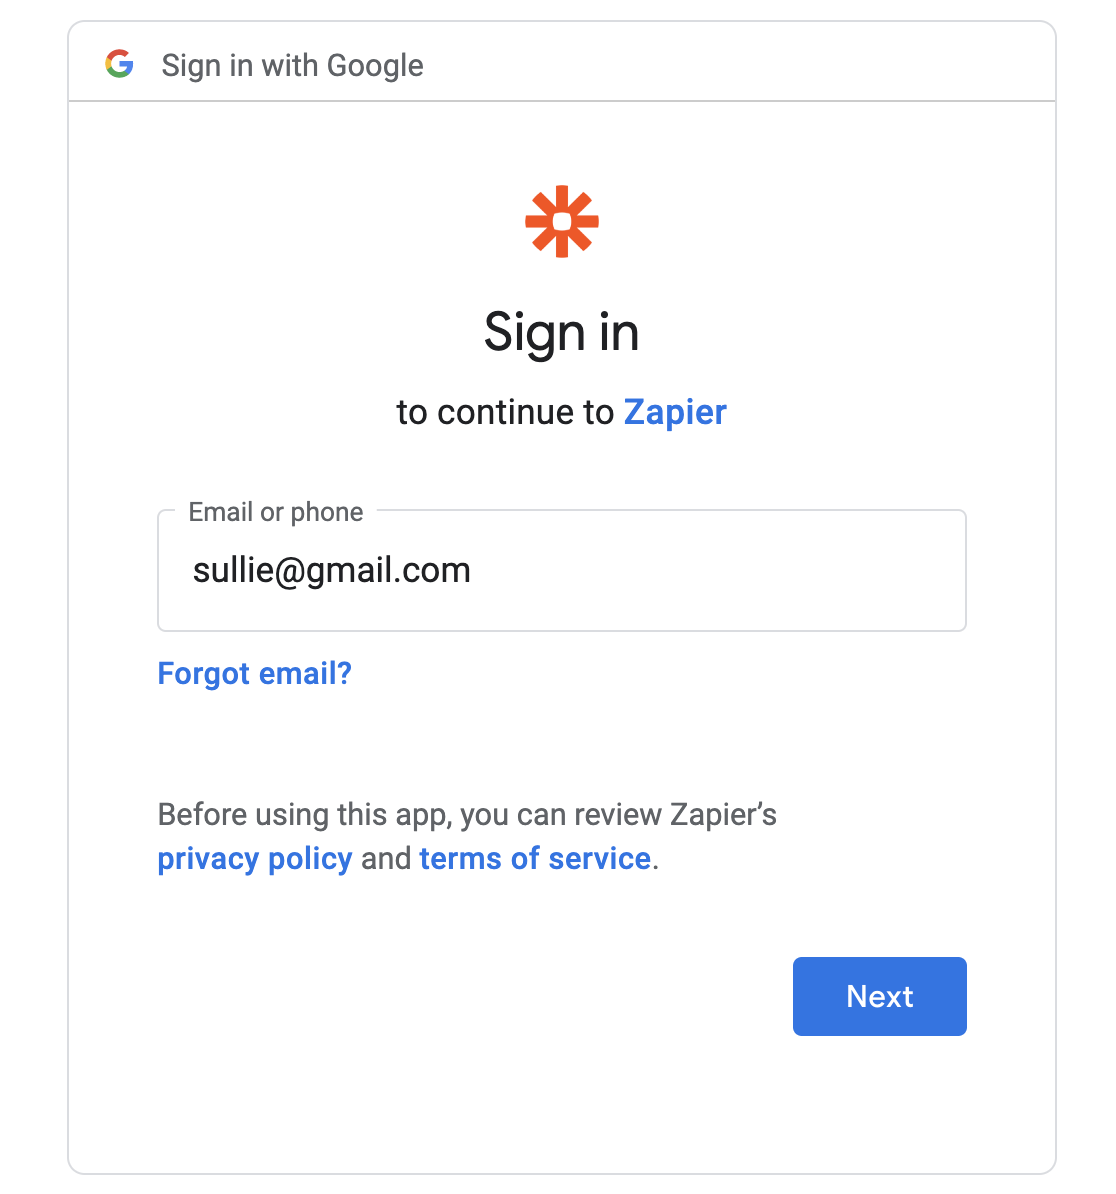 Logging in to Google via Zapier